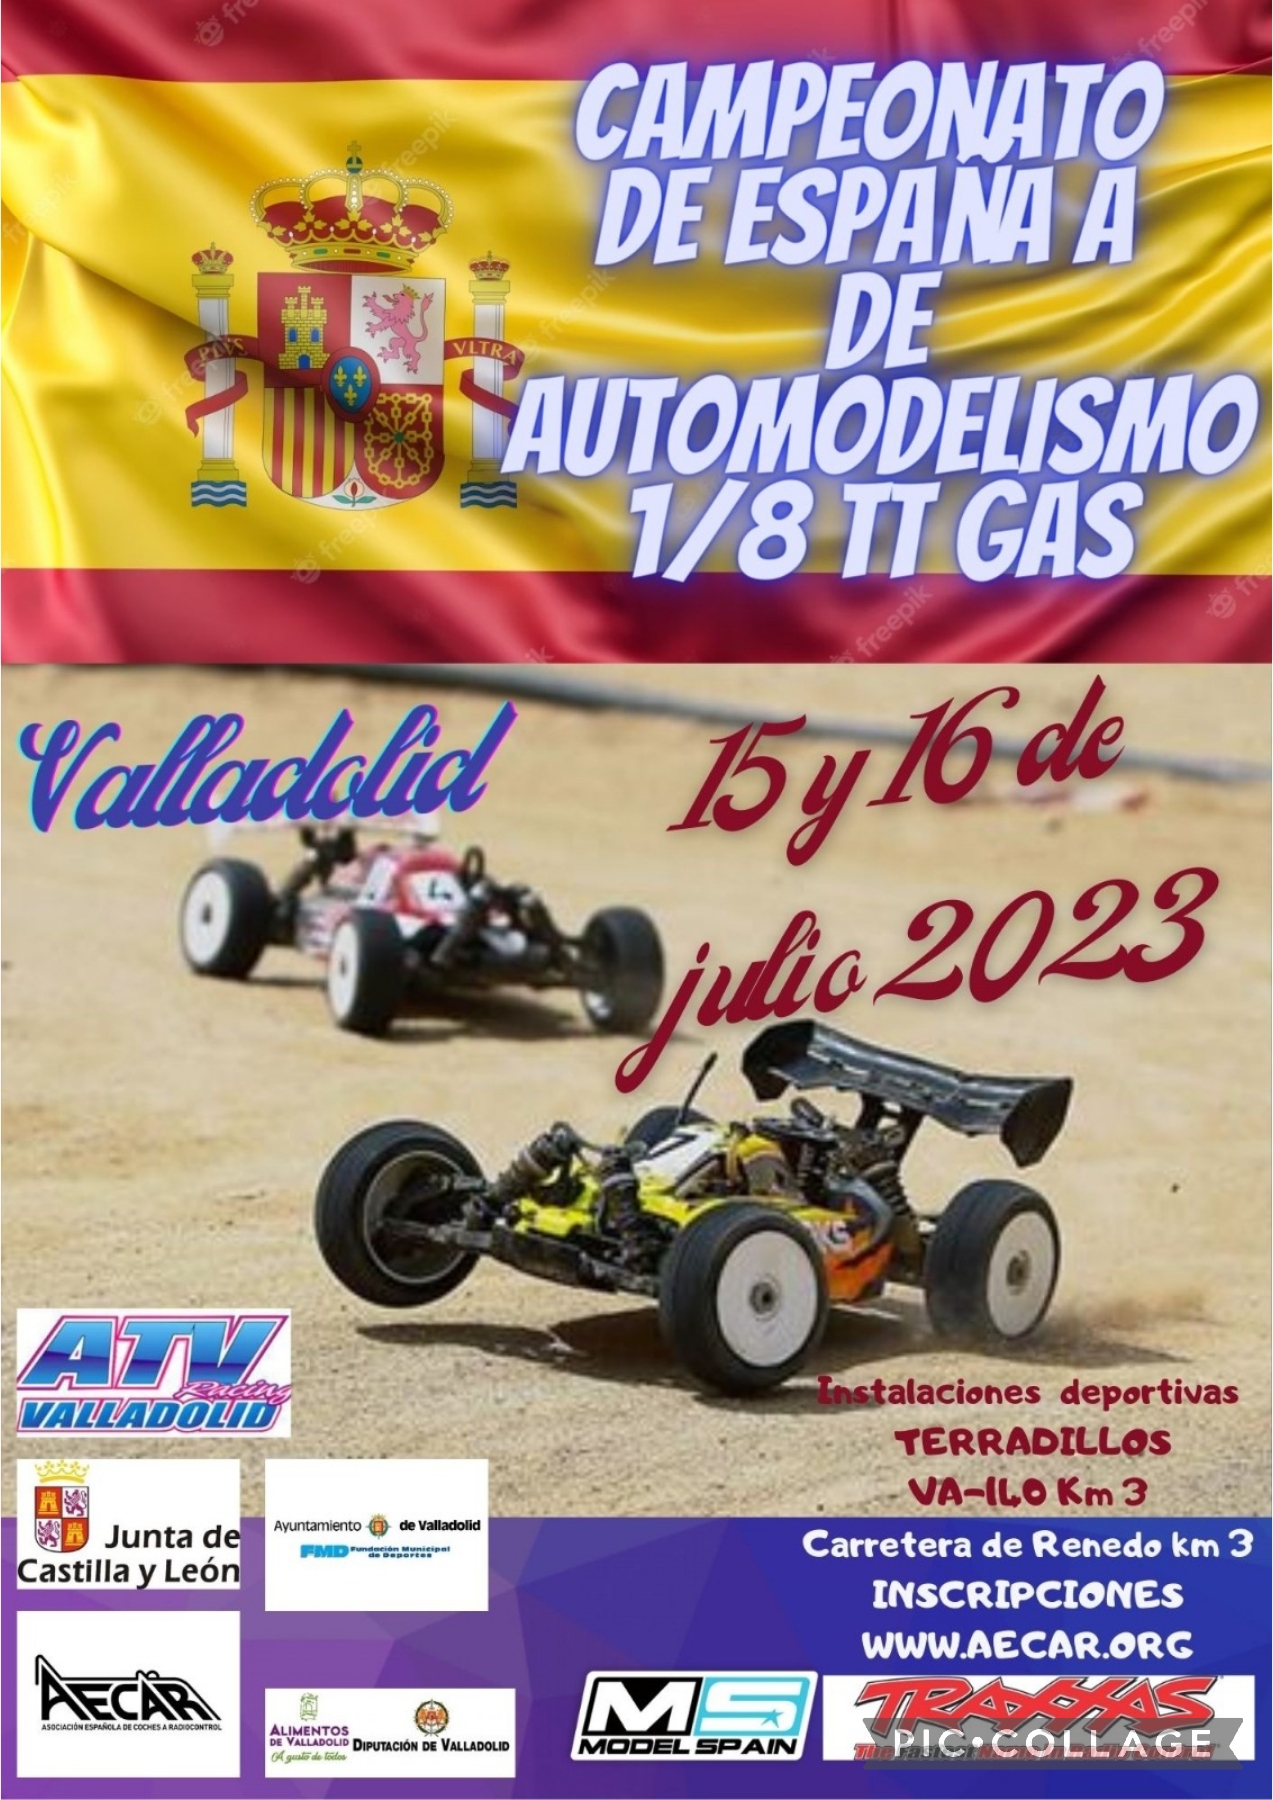 Foto del Campeonato de España de Automodelismo 1/8 TT GAS